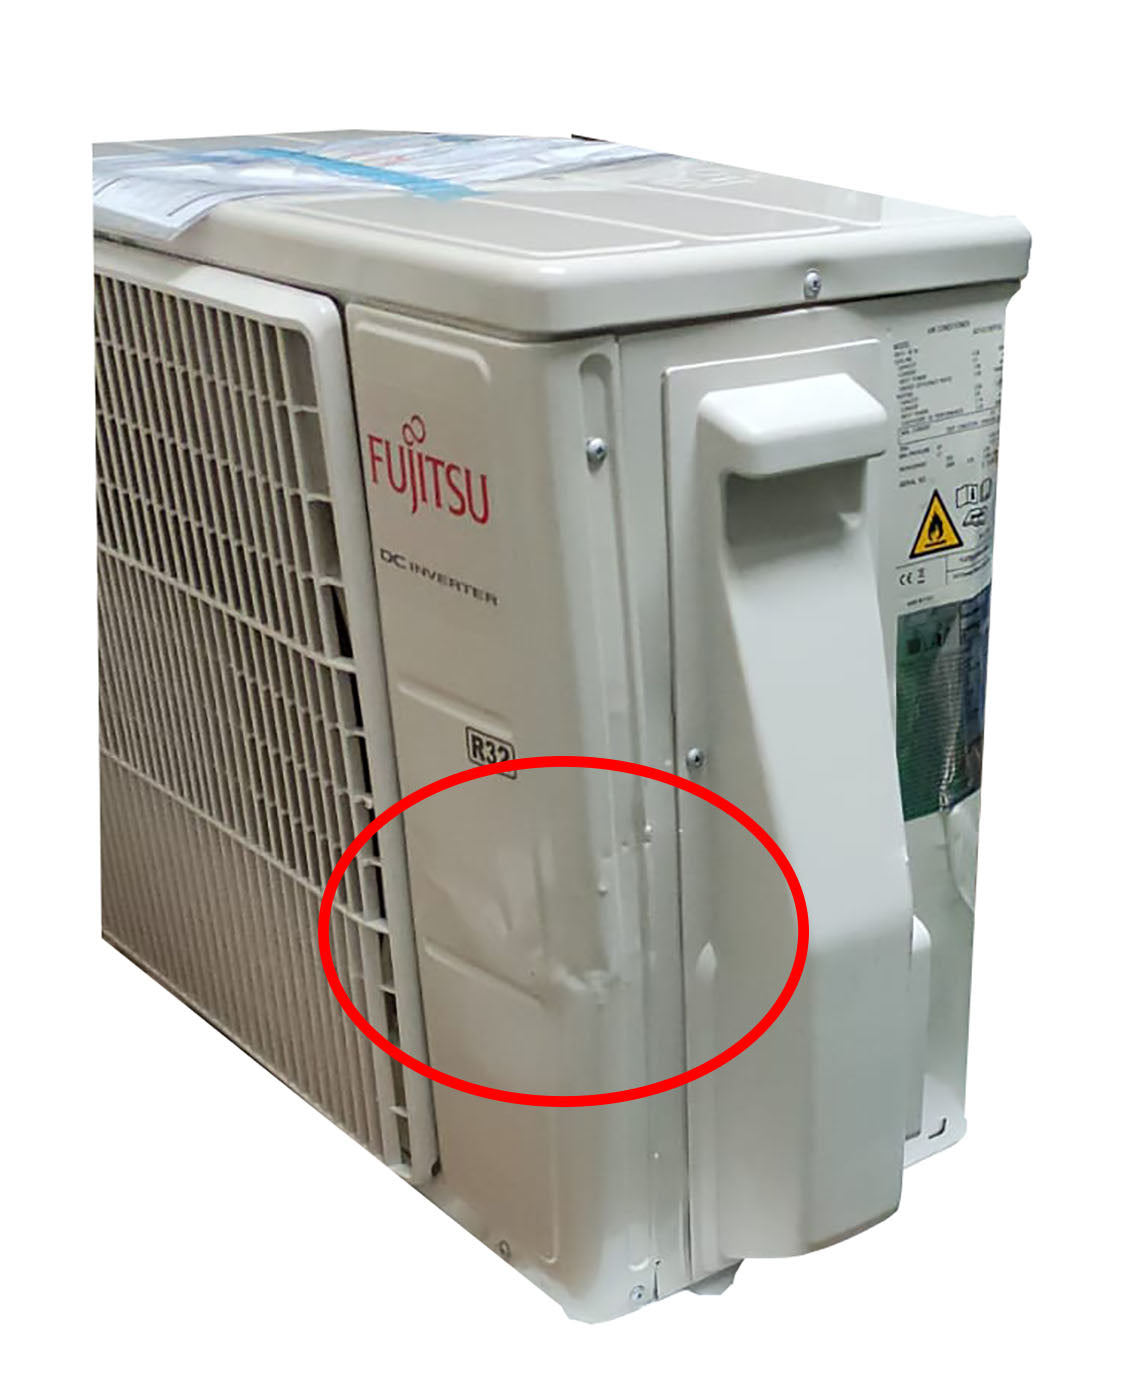 immagine-4-fujitsu-area-occasioni-climatizzatore-condizionatore-fujitsu-inverter-serie-kp-12000-btu-asyg12kpca-r-32-wi-fi-optional-classe-a